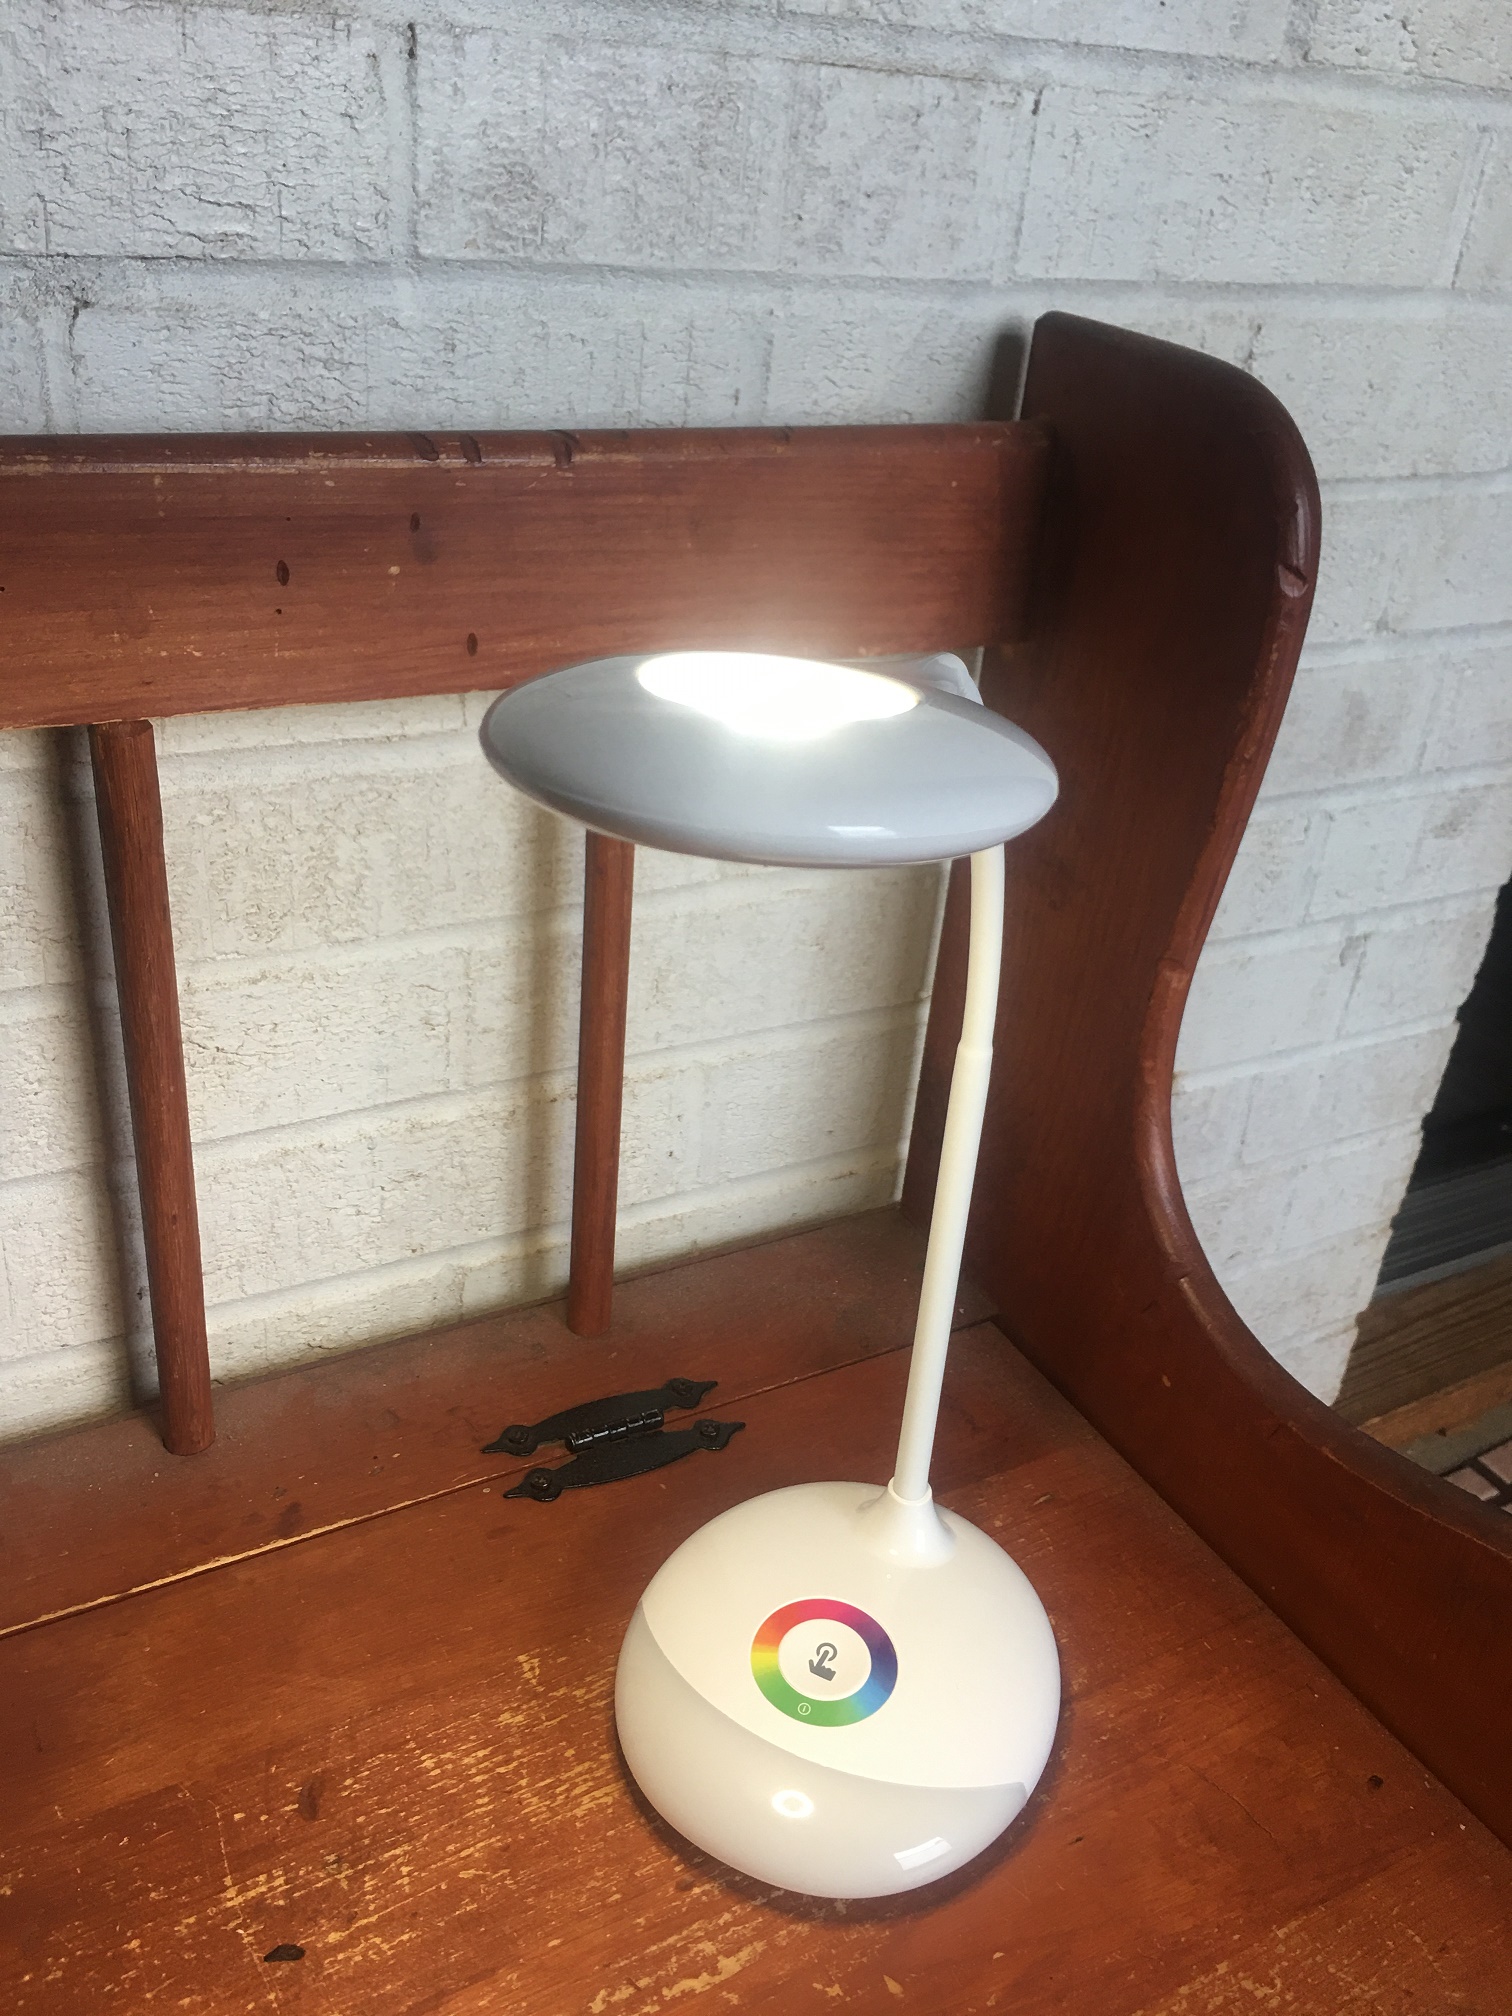 MOKO LED rechargeable desk lamp